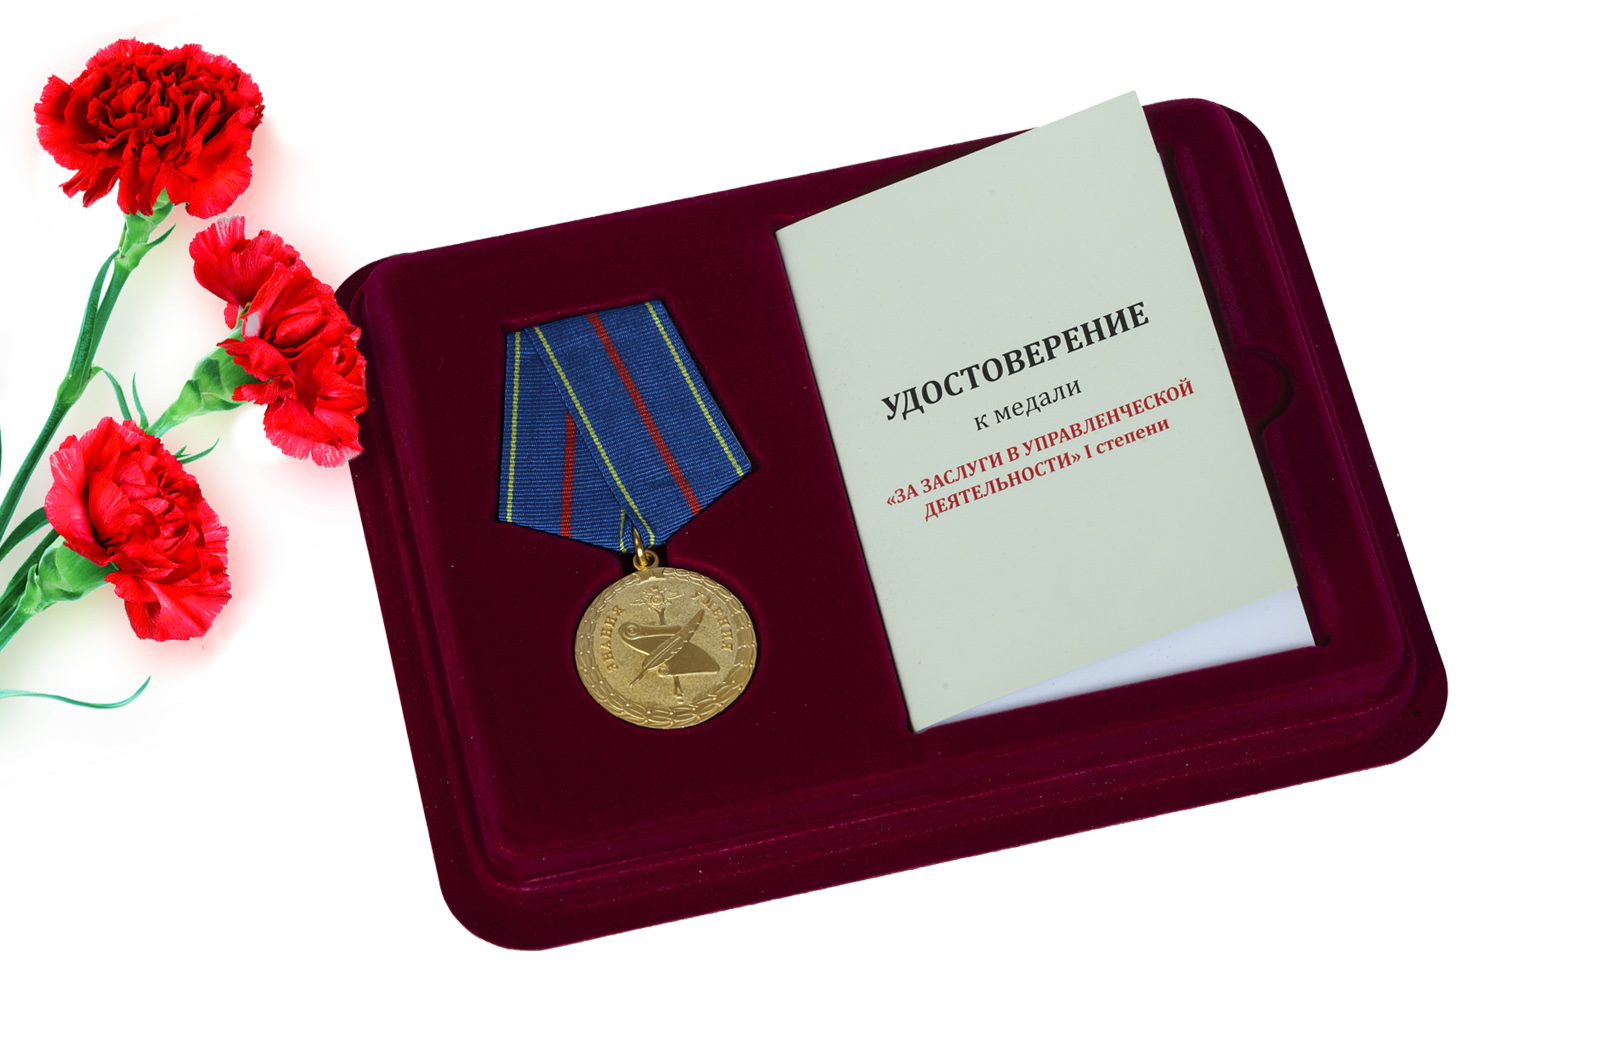 Купить медаль МВД РФ За заслуги в управленческой деятельности 1 степени онлайн с доставкой